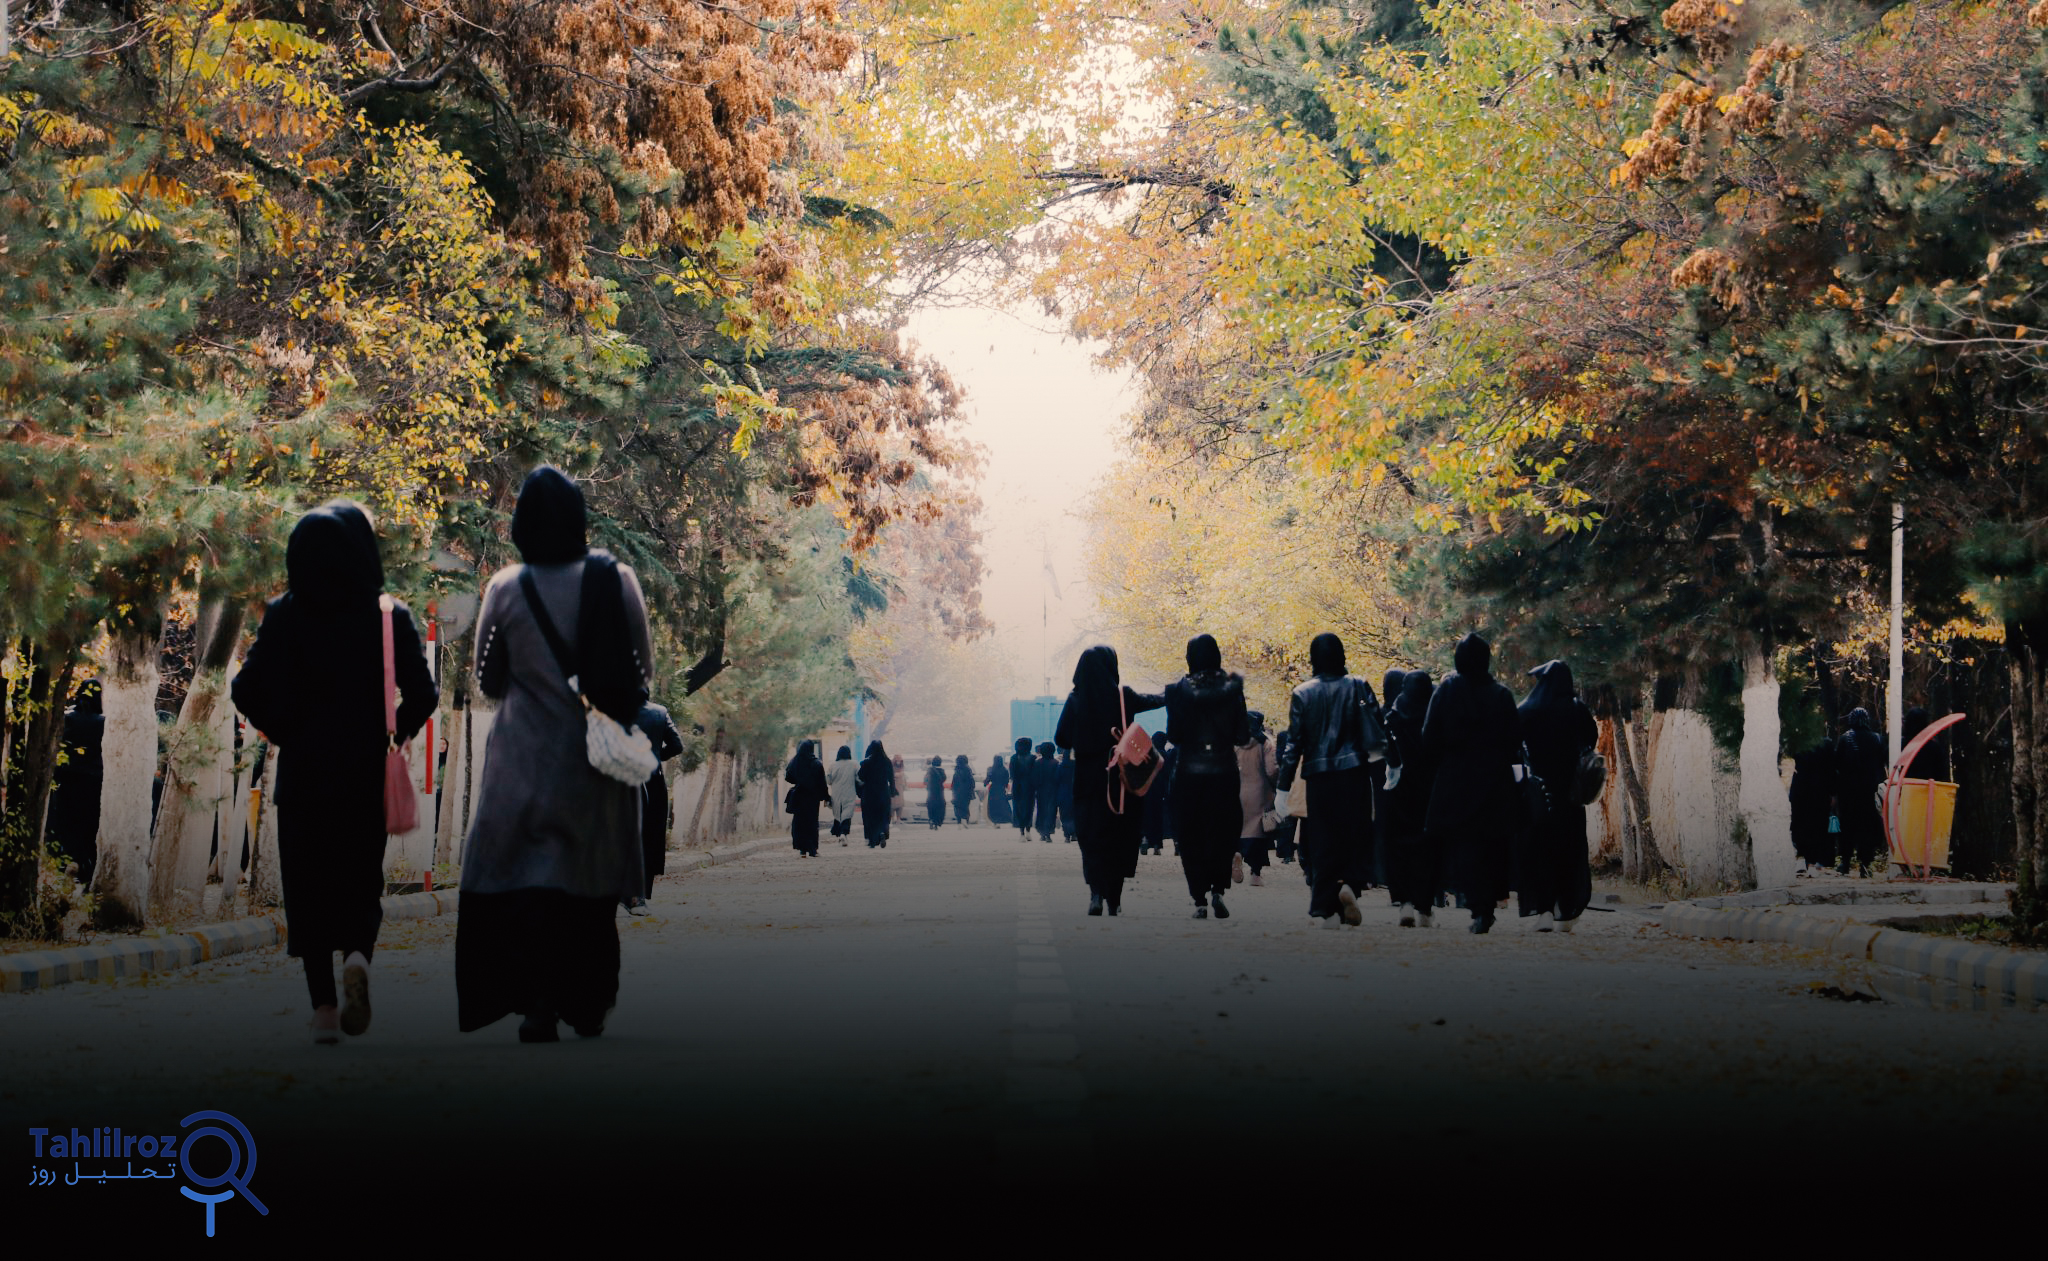 ممنوعیت تحصیل دختران افغانستان